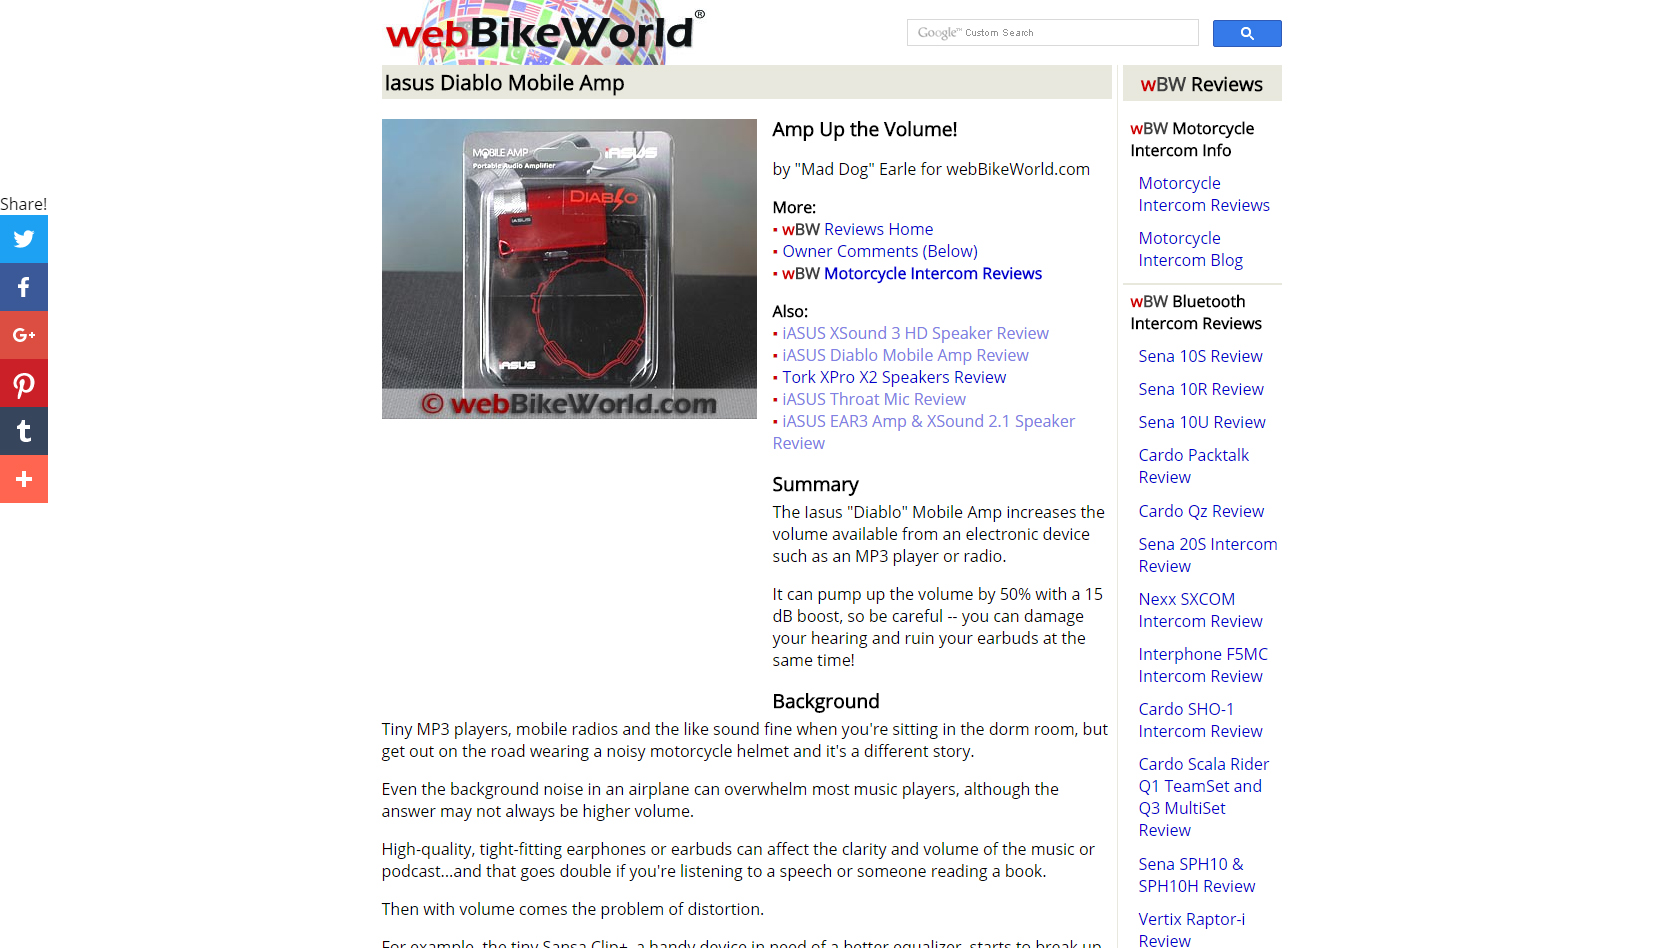 PRESS RELEASE: Feature on webBIKEWORLD